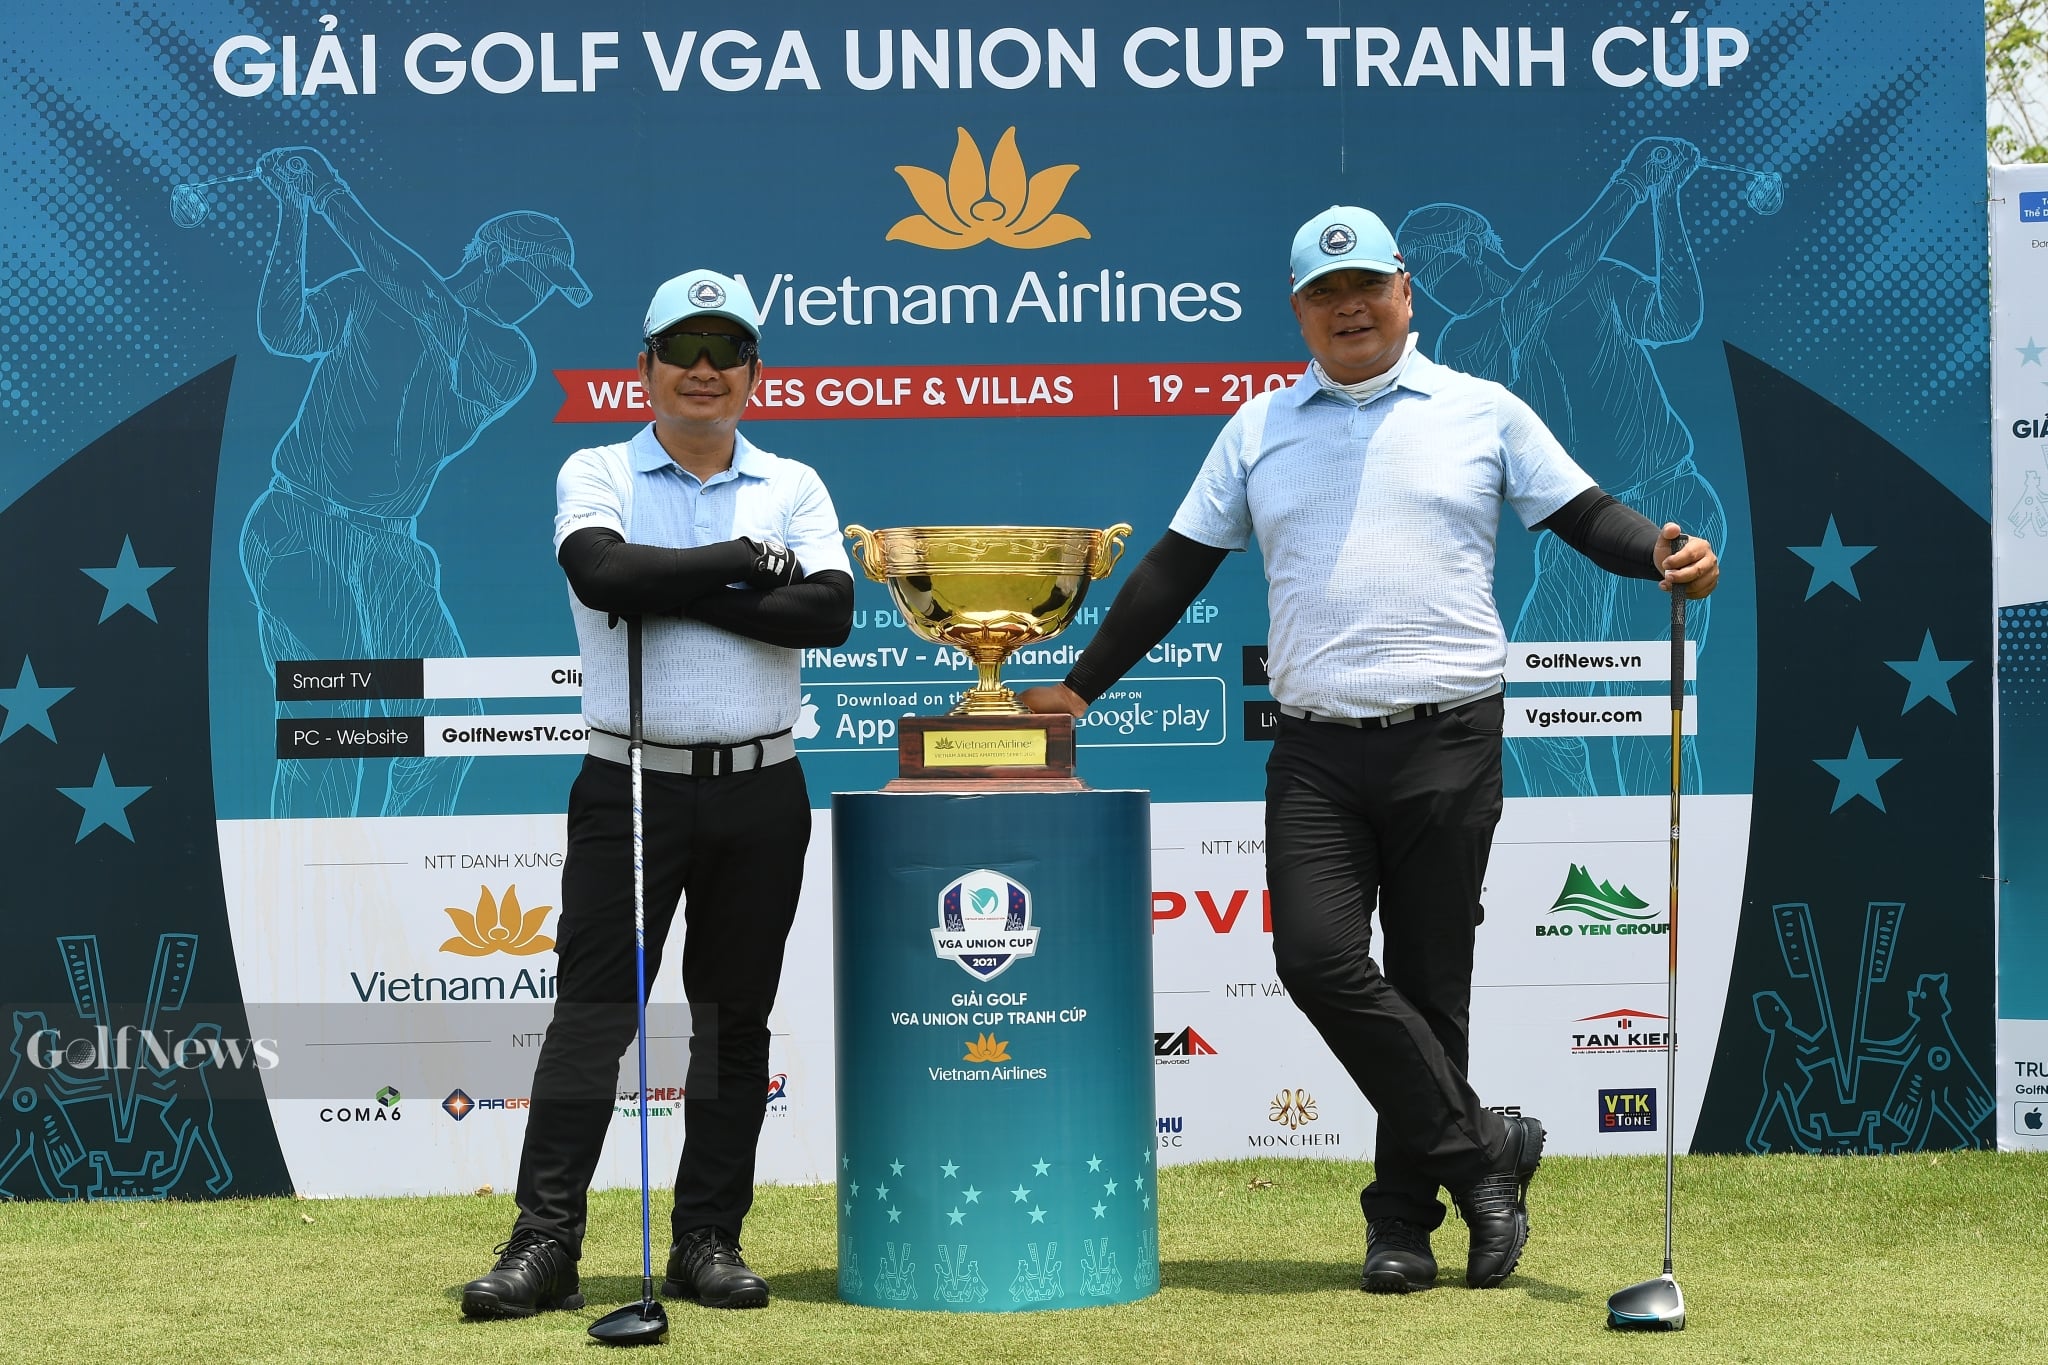 Nguyễn Văn Thống và Nguyễn Ngọc Khôi để ghi một trận thắng duy nhất trong buổi chiều ngày 18/3 ở trận đấu fourballs với tỉ số cách biệt 4&2. Ảnh Golfnews